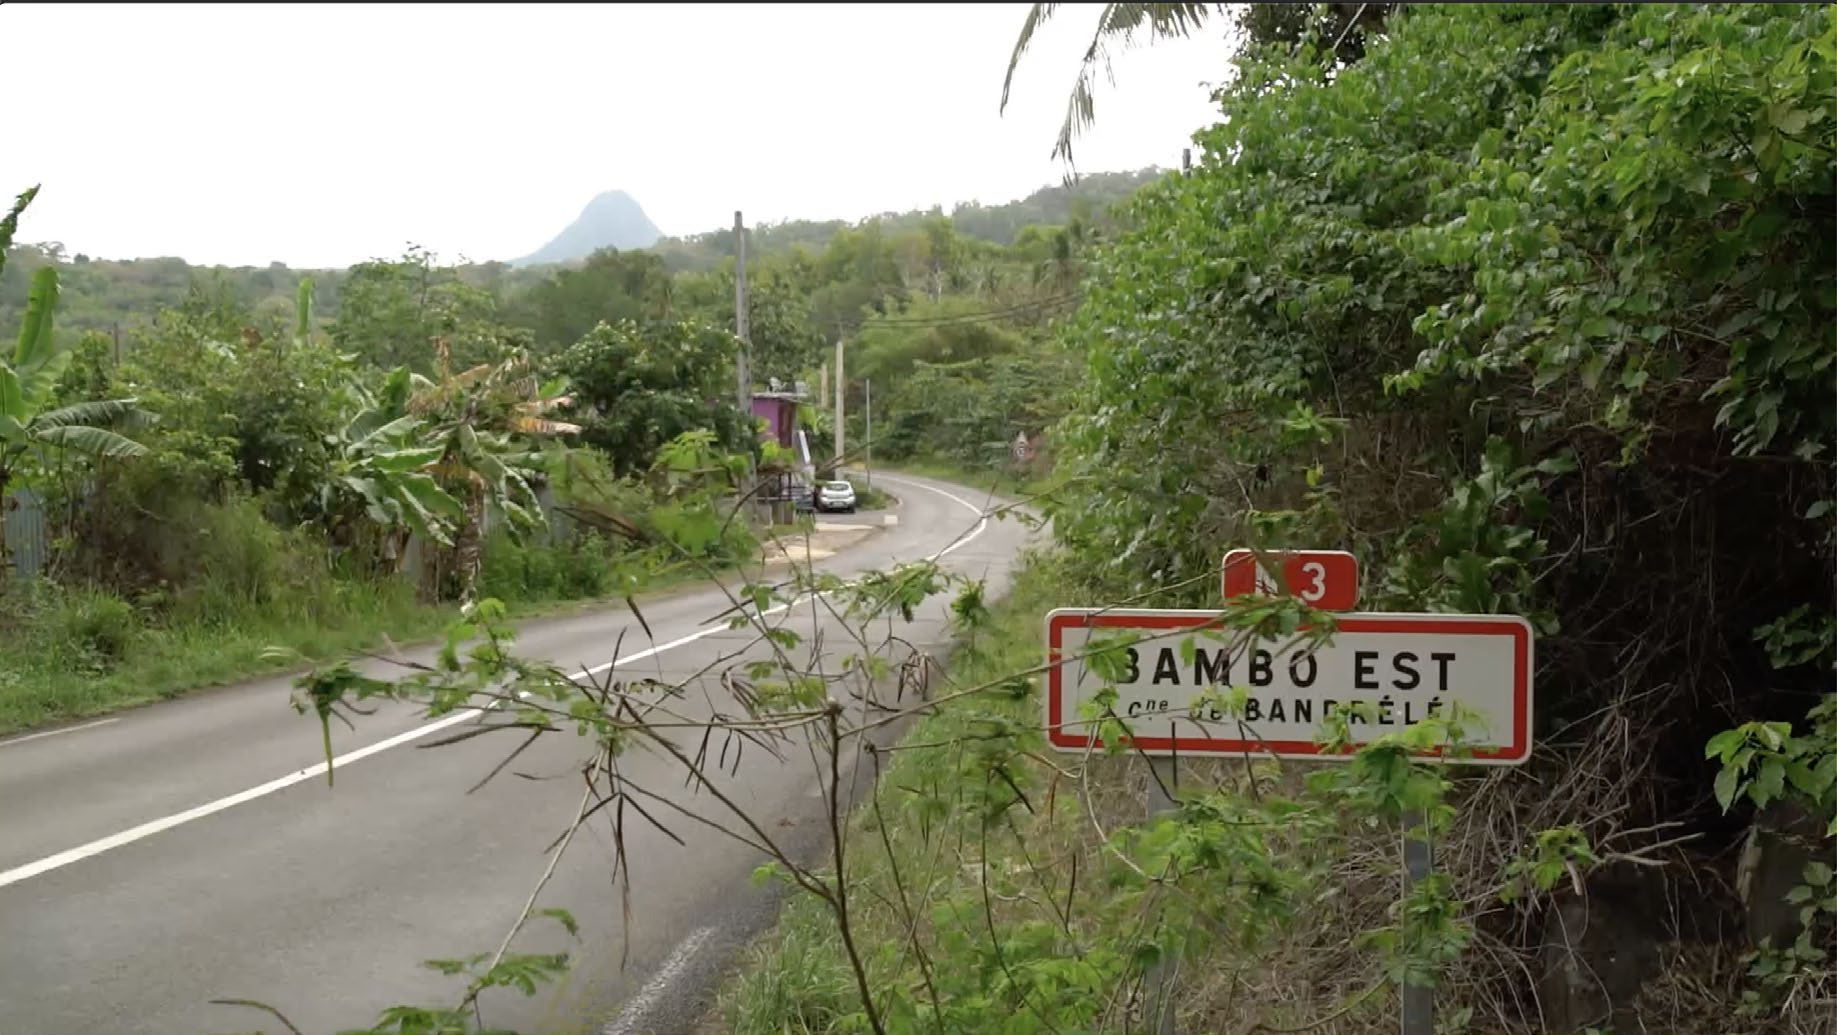 L'évolution de la société mahoraise au coeur du documentaire "Retour à Bambo-Est" diffusé le 2 août sur Canal+